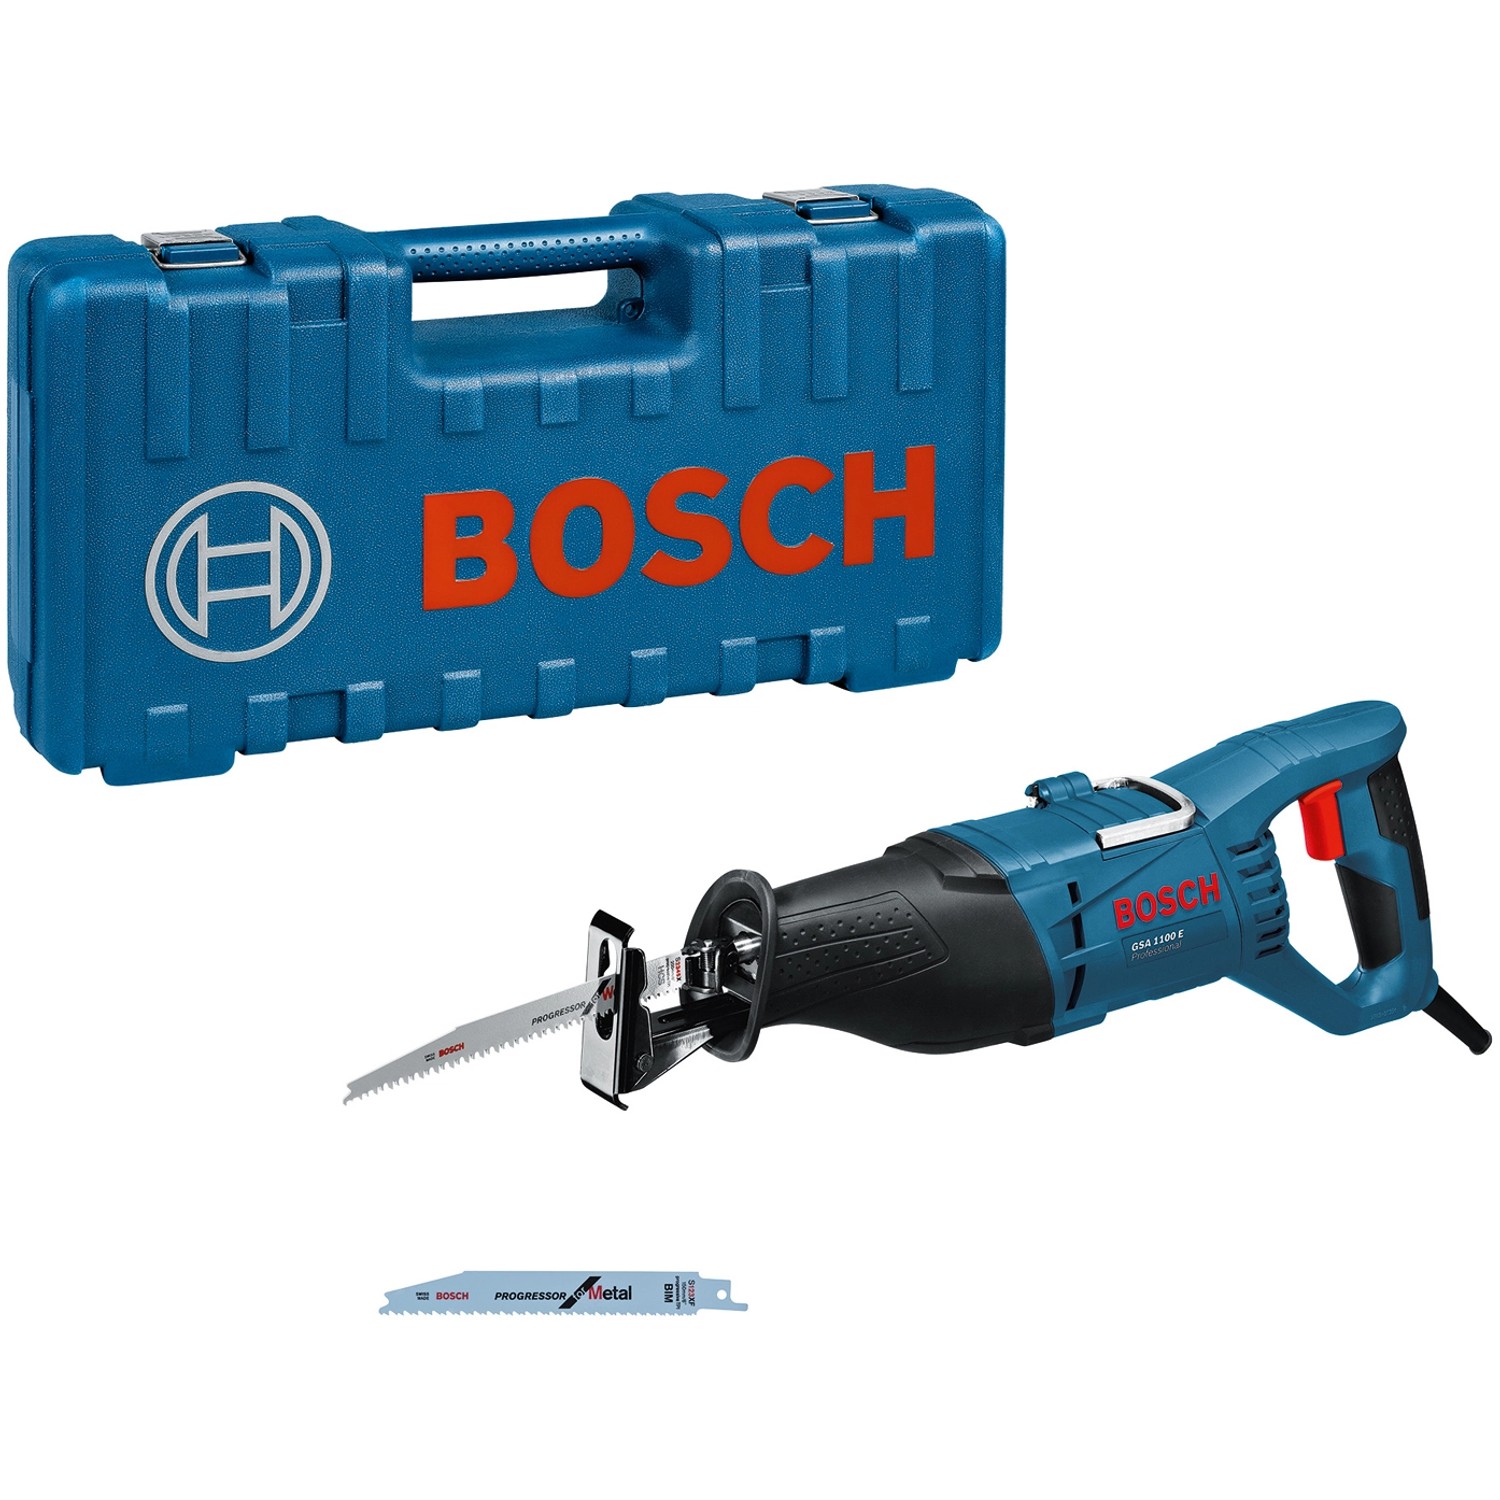 Bosch Professional Säbelsäge GSA 1100 E im Handwerkerkoffer